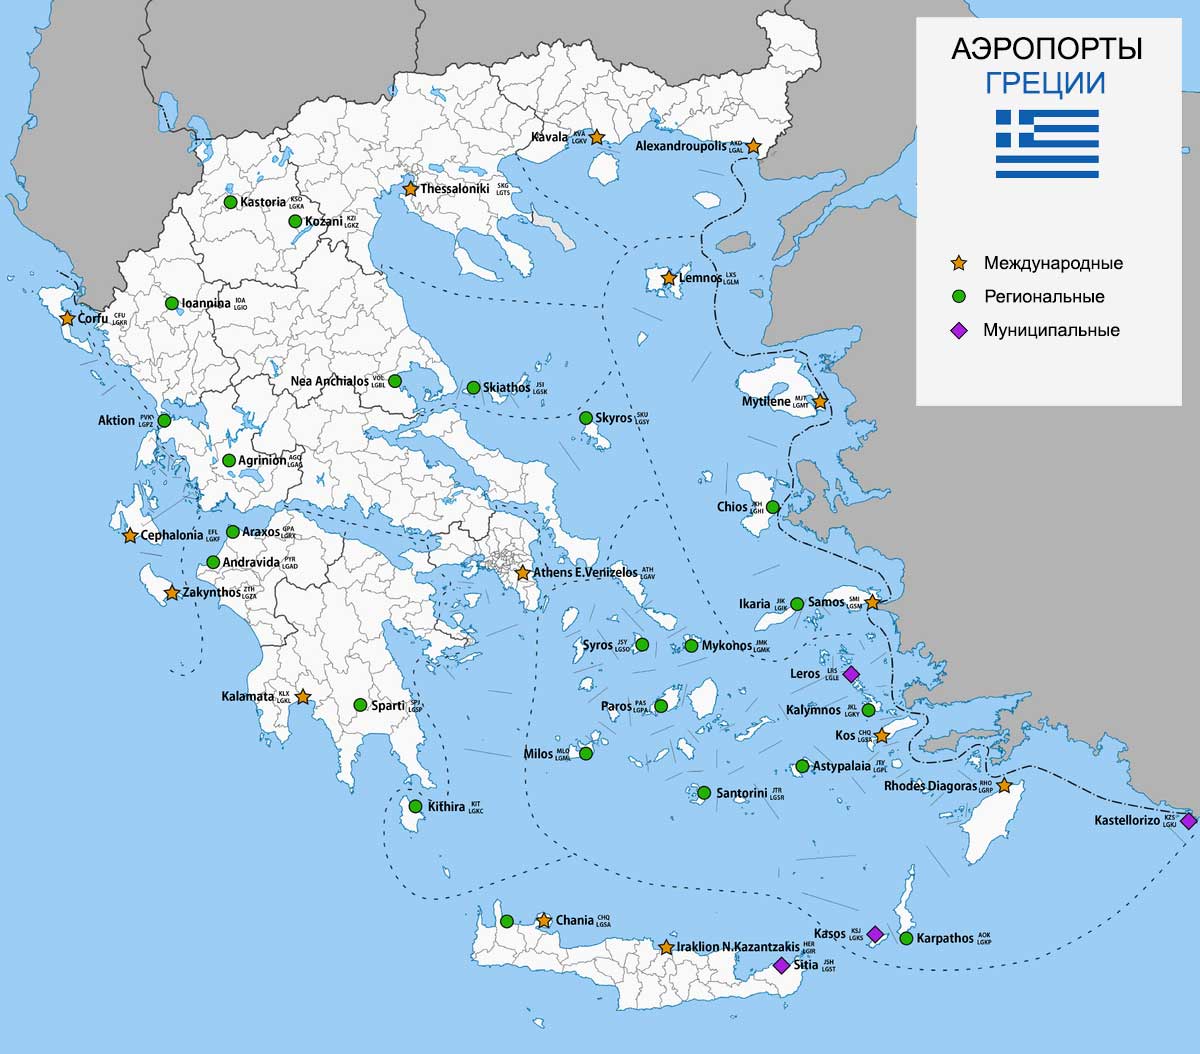 Аэропорты греции: региональные, на островах, на материковой части